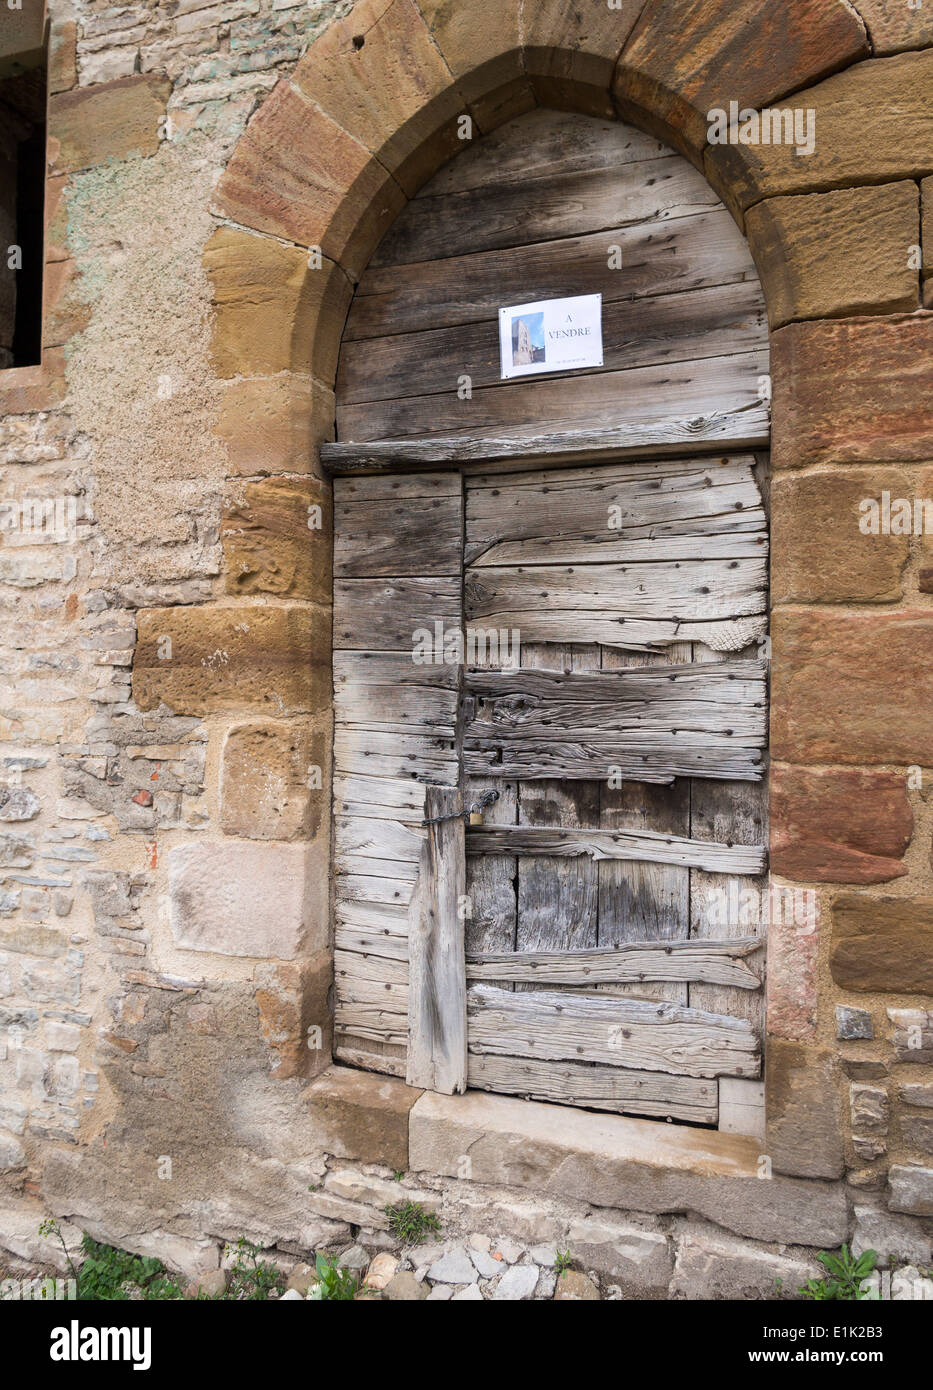 A Vendre - in vendita. Un piccolo in vendita segno su un antico intavolato portale in pietra. Cordes sur Ciel, Tarn, Francia Foto Stock